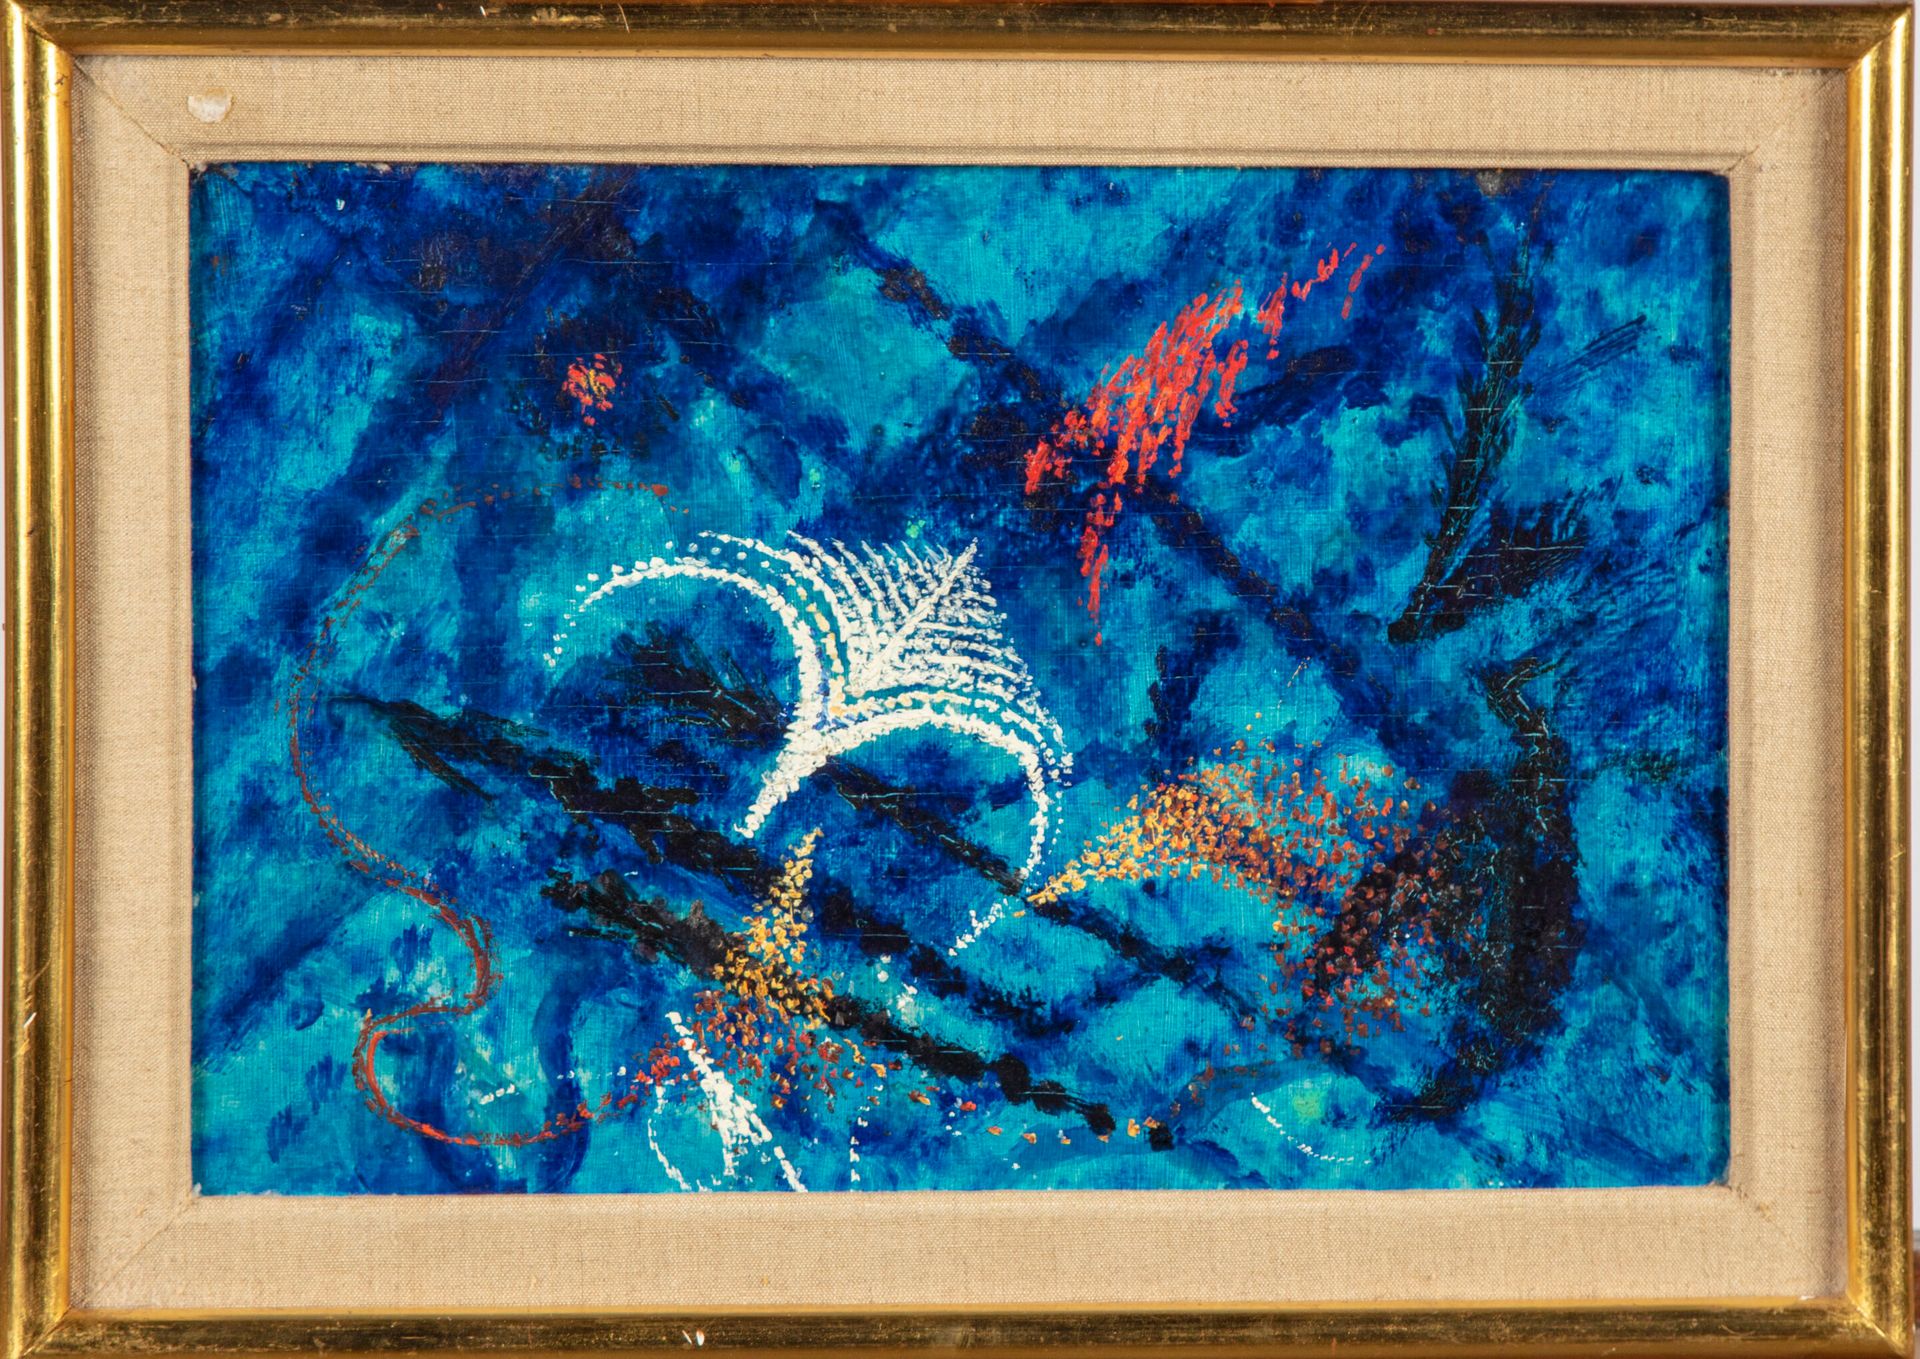 Null ECOLE MODERNE

Composition sur fond bleu

Huile sur panneau

22,5 x 33 cm